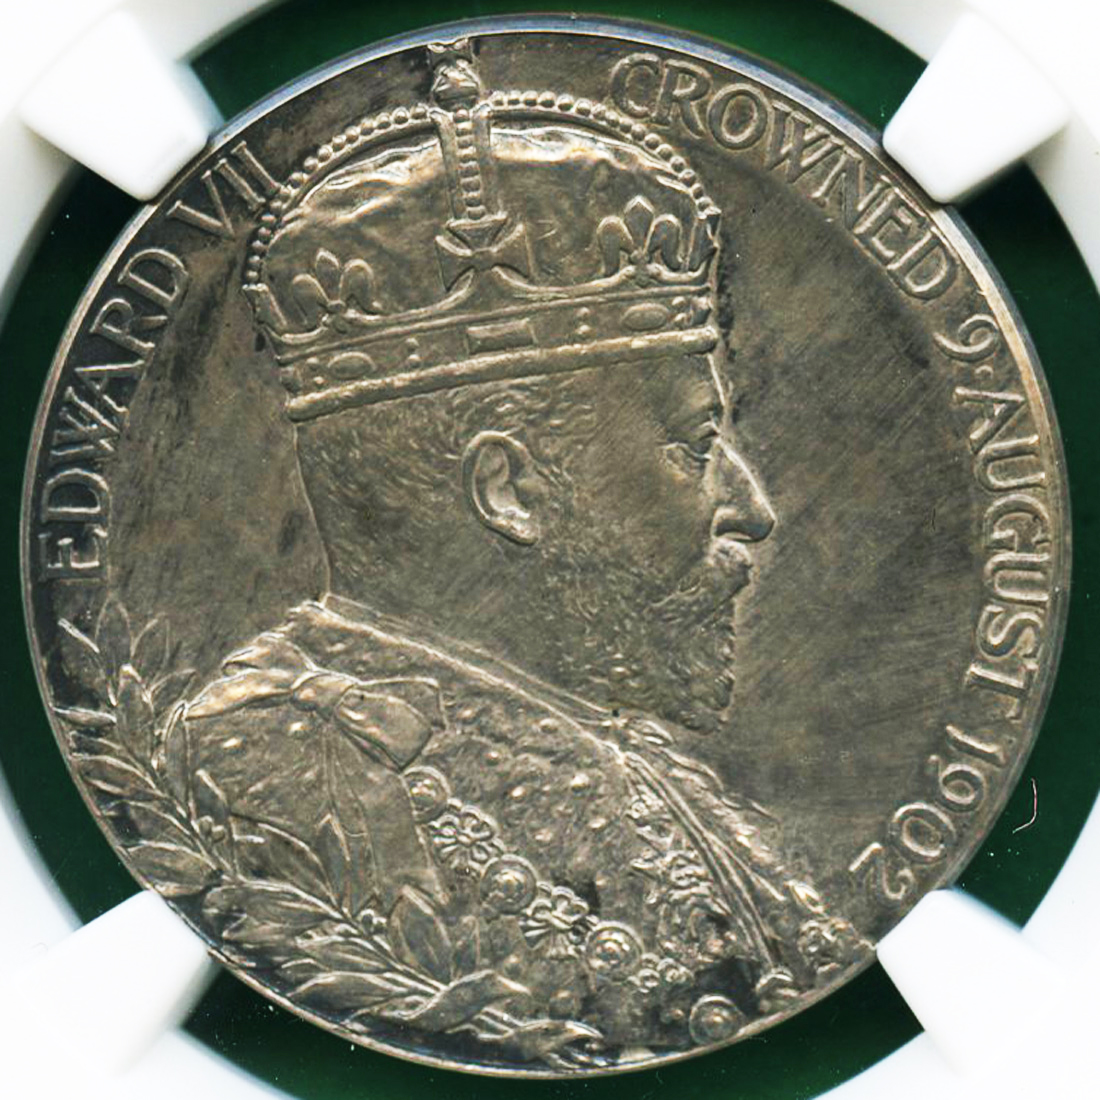 1902 イギリス エドワード アレクサンドラ コロネーション ブロンズ メダル